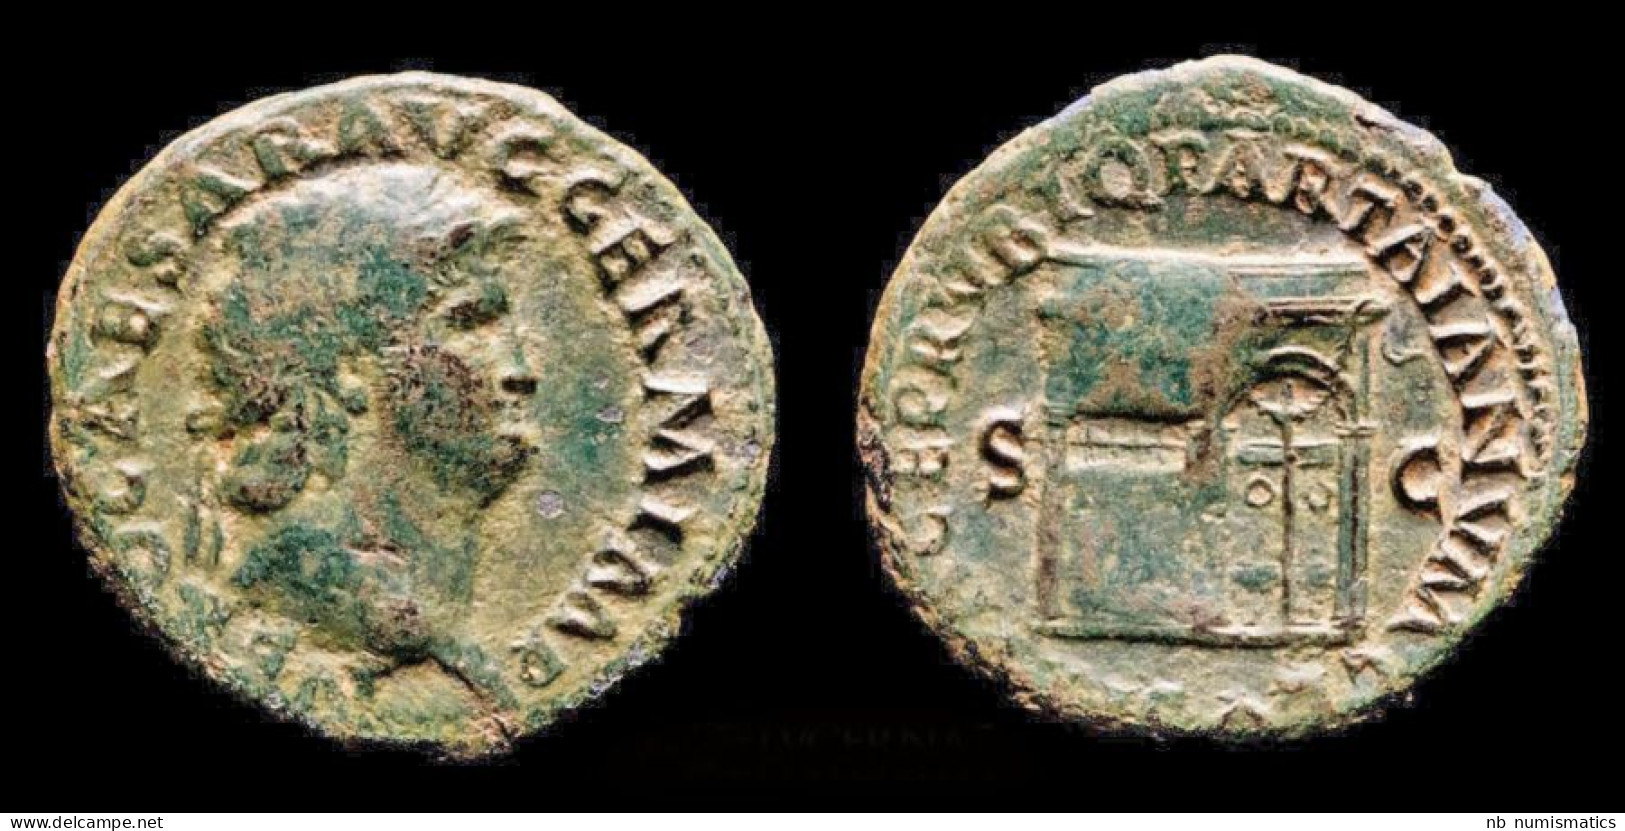 Nero AE As Temple Of Janus - The Julio-Claudians (27 BC Tot 69 AD)